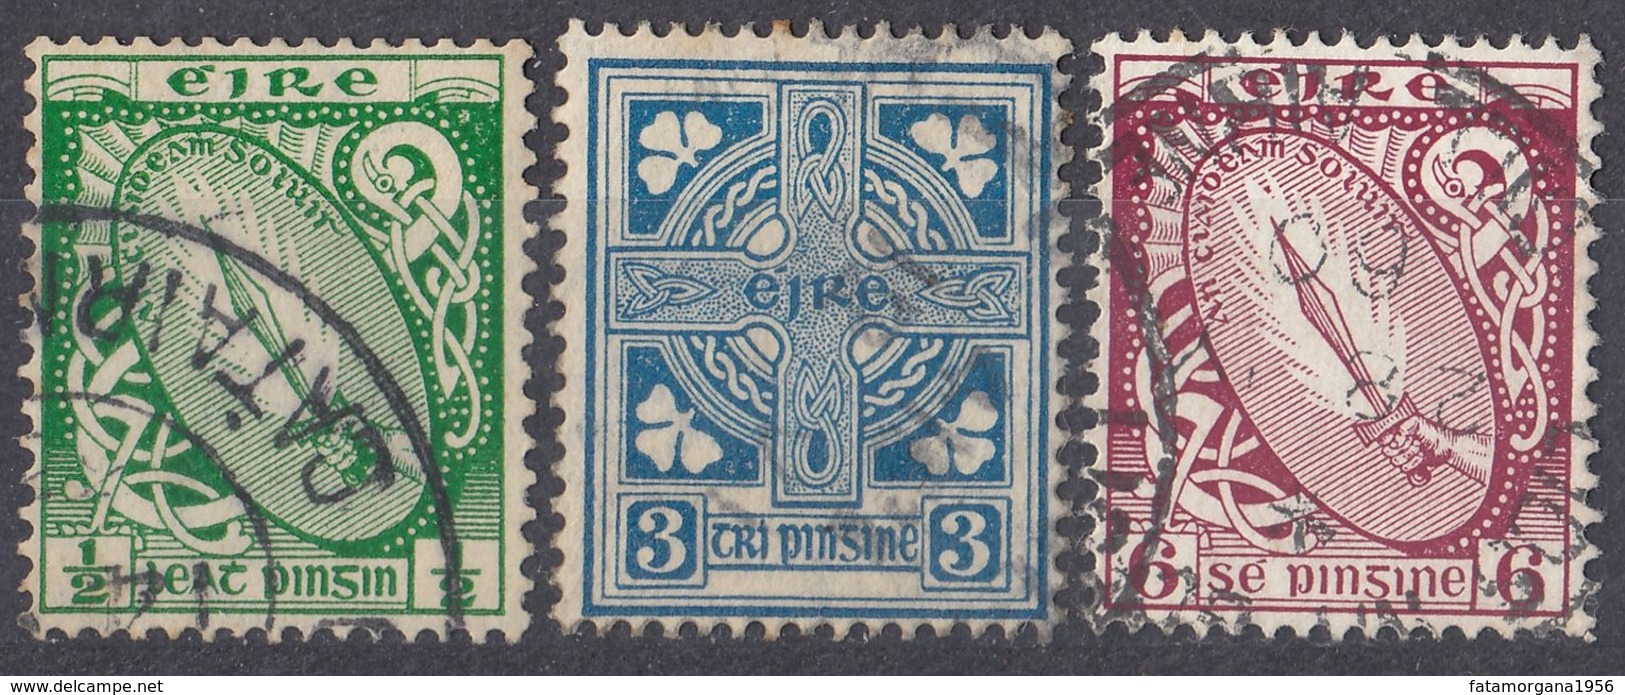 IRLANDA - 1922/1924 - Lotto Di 3 Valori Usati: Yvert  40, 45 E 48, Come Da Immagine. - Usati